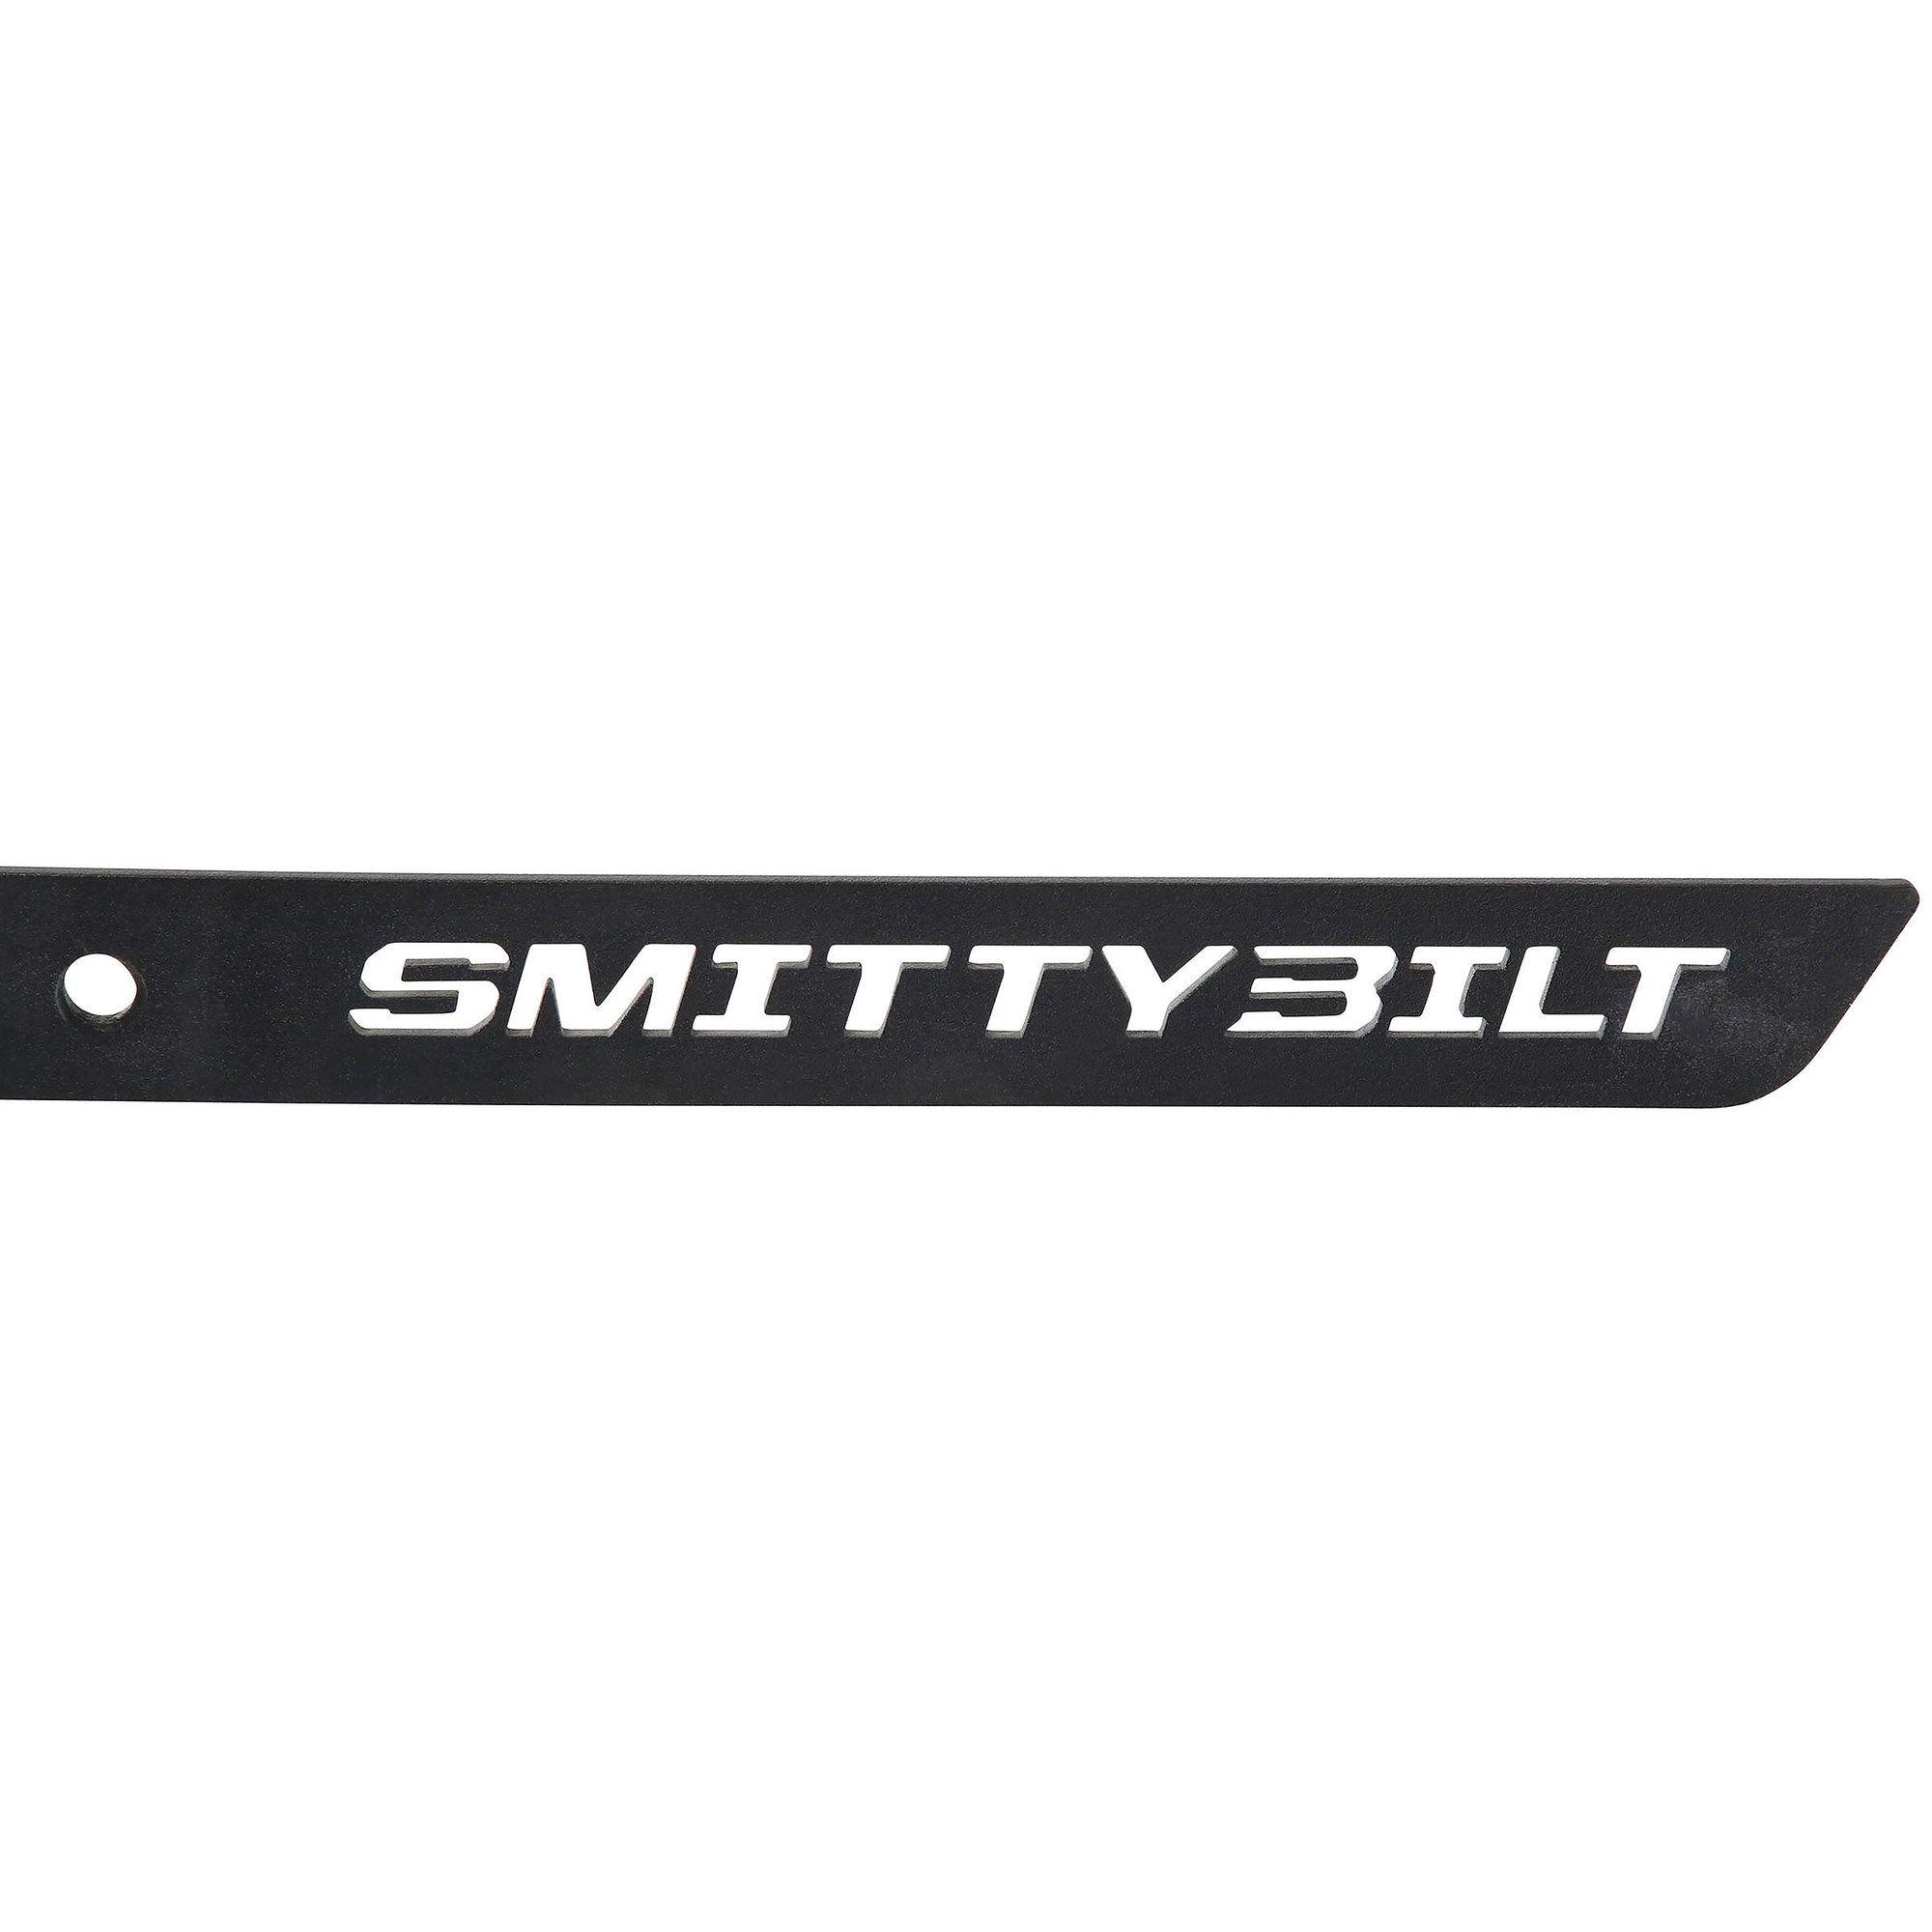 Jeep Wrangler Unlimited Logo - Smittybilt 77634 SRC Side Armor Steps for 18-19 Jeep Wrangler ...